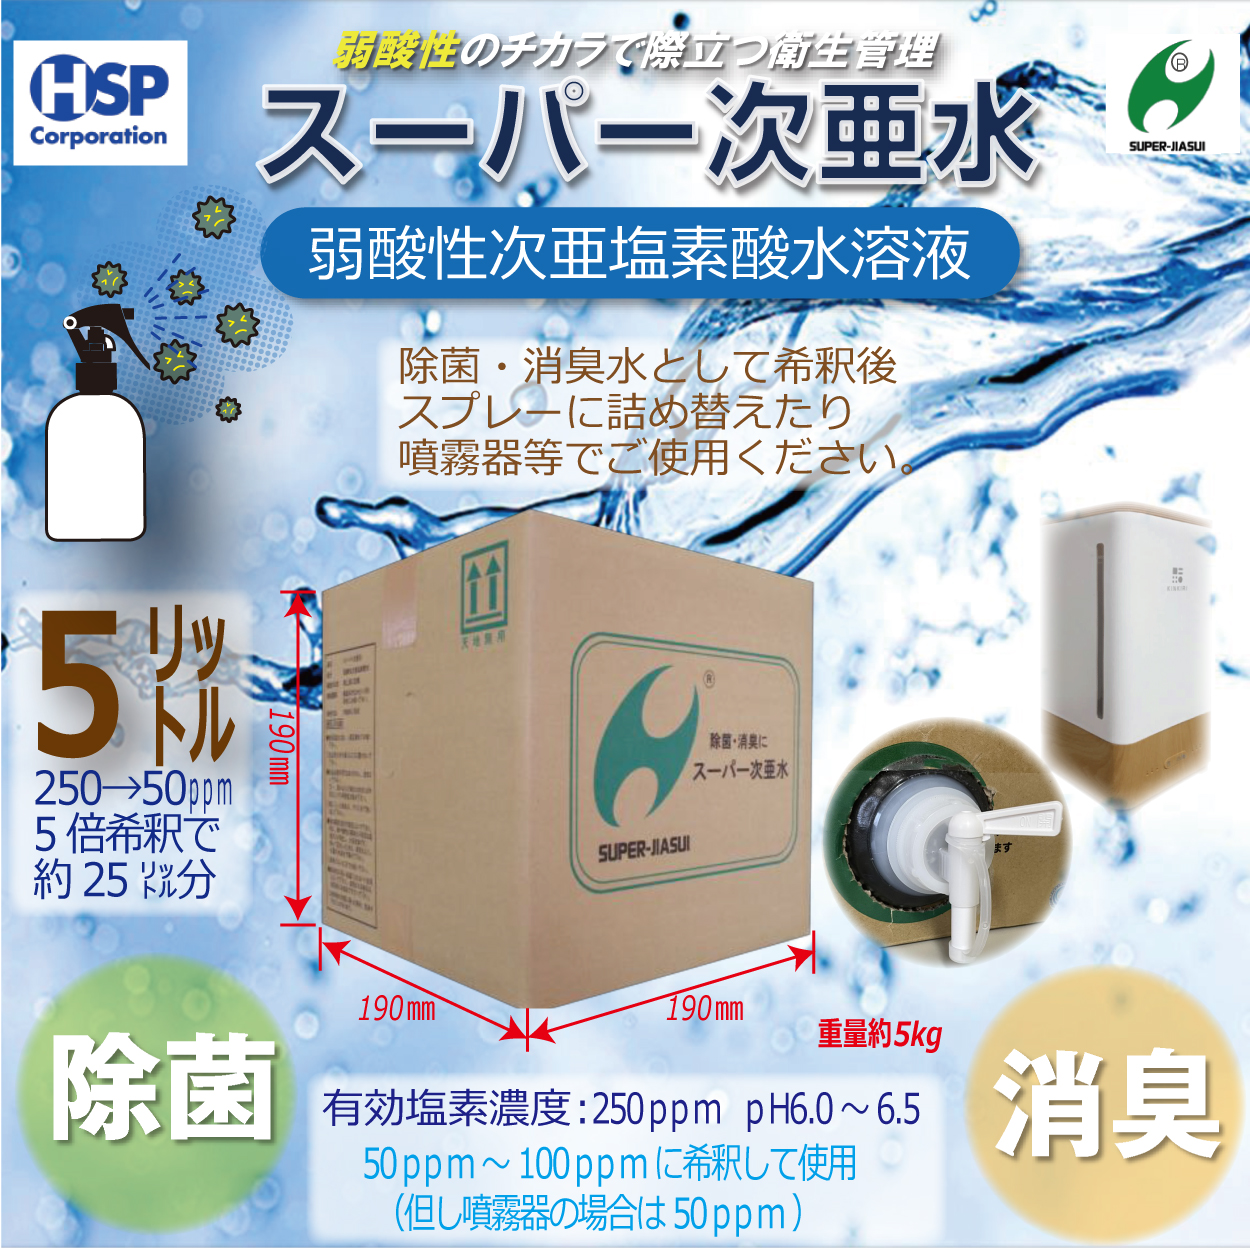 【送料無料】スーパー次亜水 5L 次亜塩素酸水溶液 除菌 消臭 250ppm 弱酸性6.0~6.5pH 安全 日本製